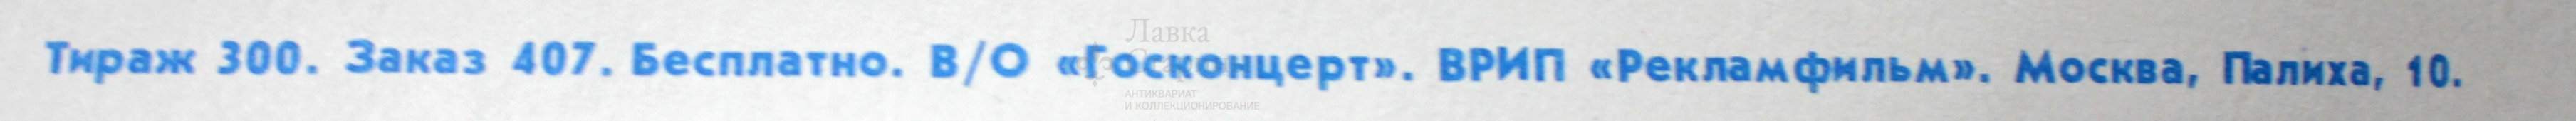 Советский плакат к концерту «Новая симфониетта», дирижер Лев Маркиз, Москва, 1991 г.